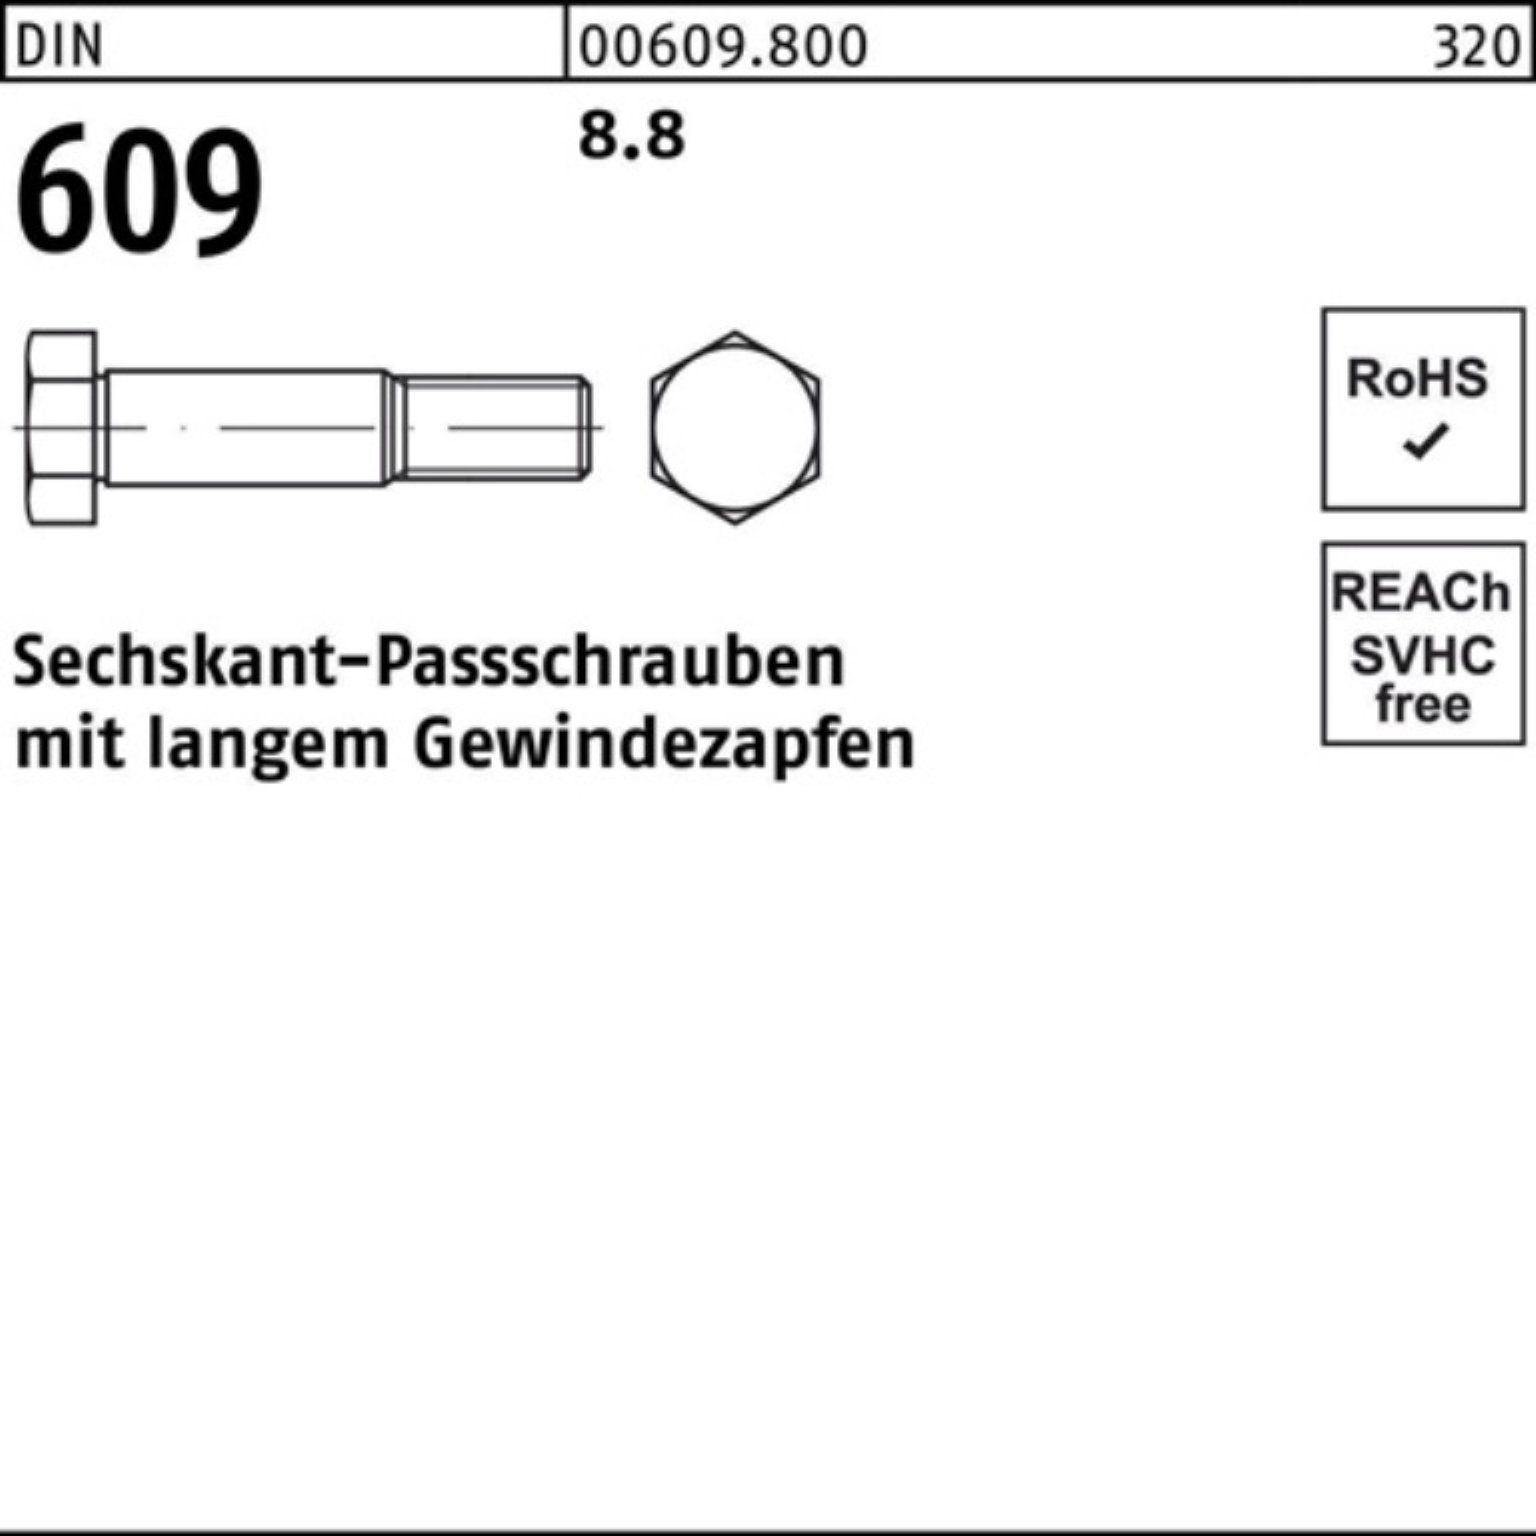 Reyher Schraube 100er DIN 609 Sechskantpassschraube Pack Gewindezapfen langem 70 M20x